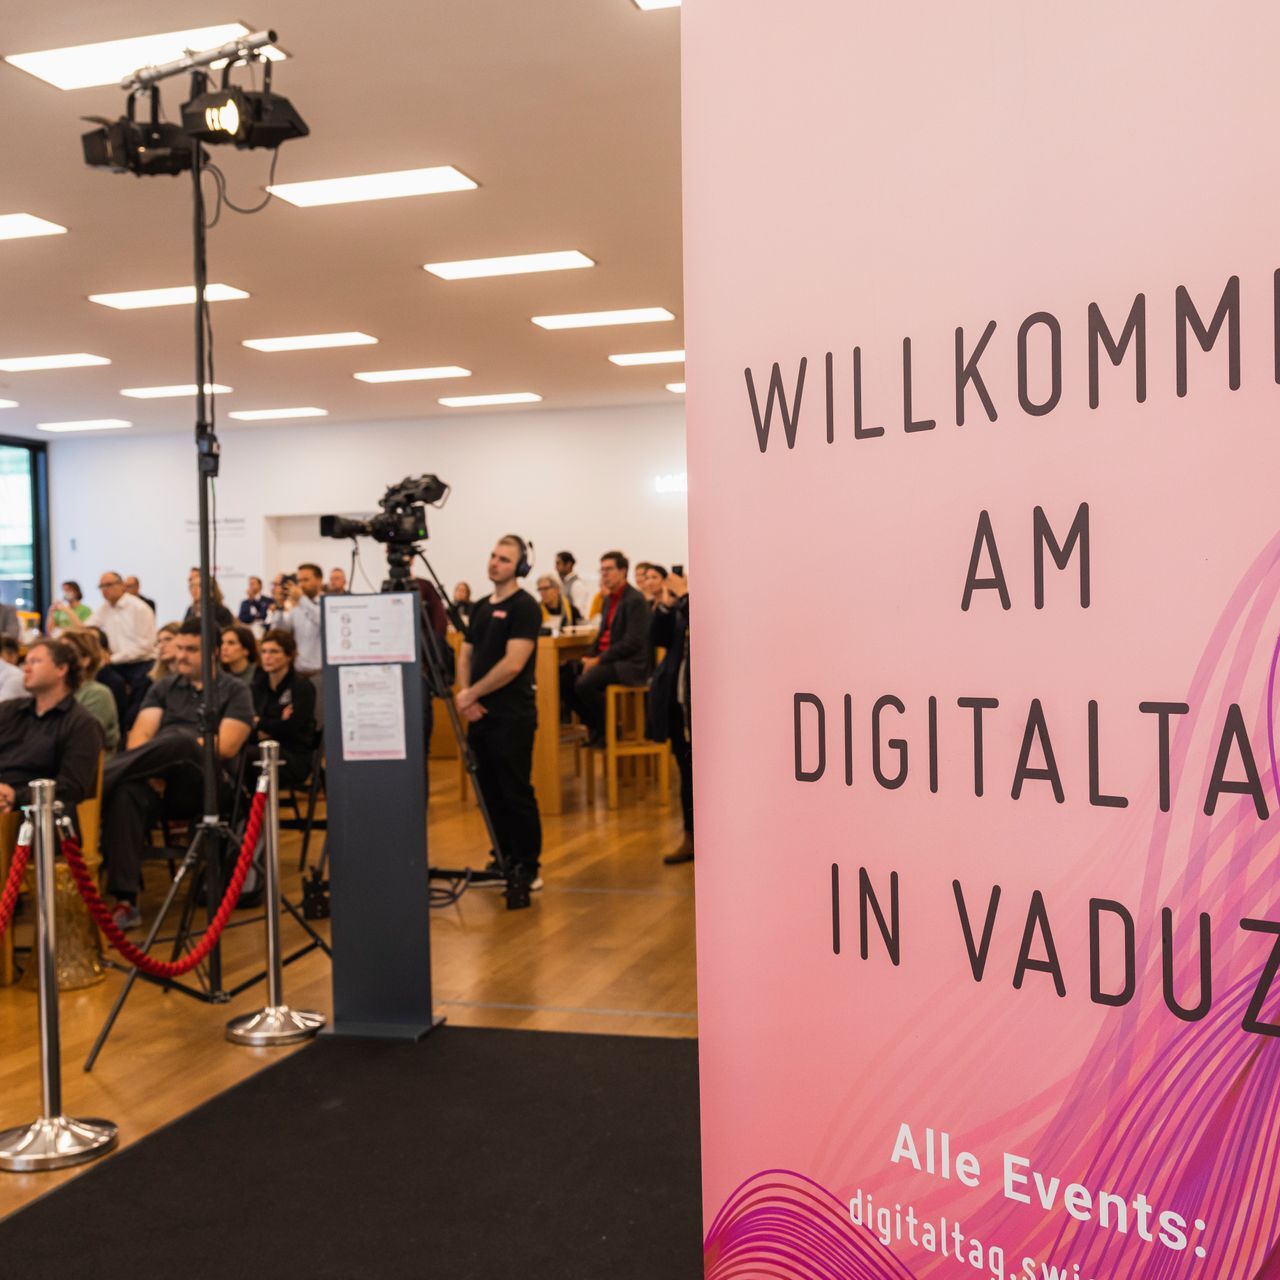 La “Digitaltag Vaduz”, accolta dal Kunstmuseum della capitale del Principato del Liechtenstein sabato 6 novembre 2021, ha suscitato l’entusiasmo di pubblico e relatori in analogia con la “Giornata Digitale Svizzera” del successivo giorno 10